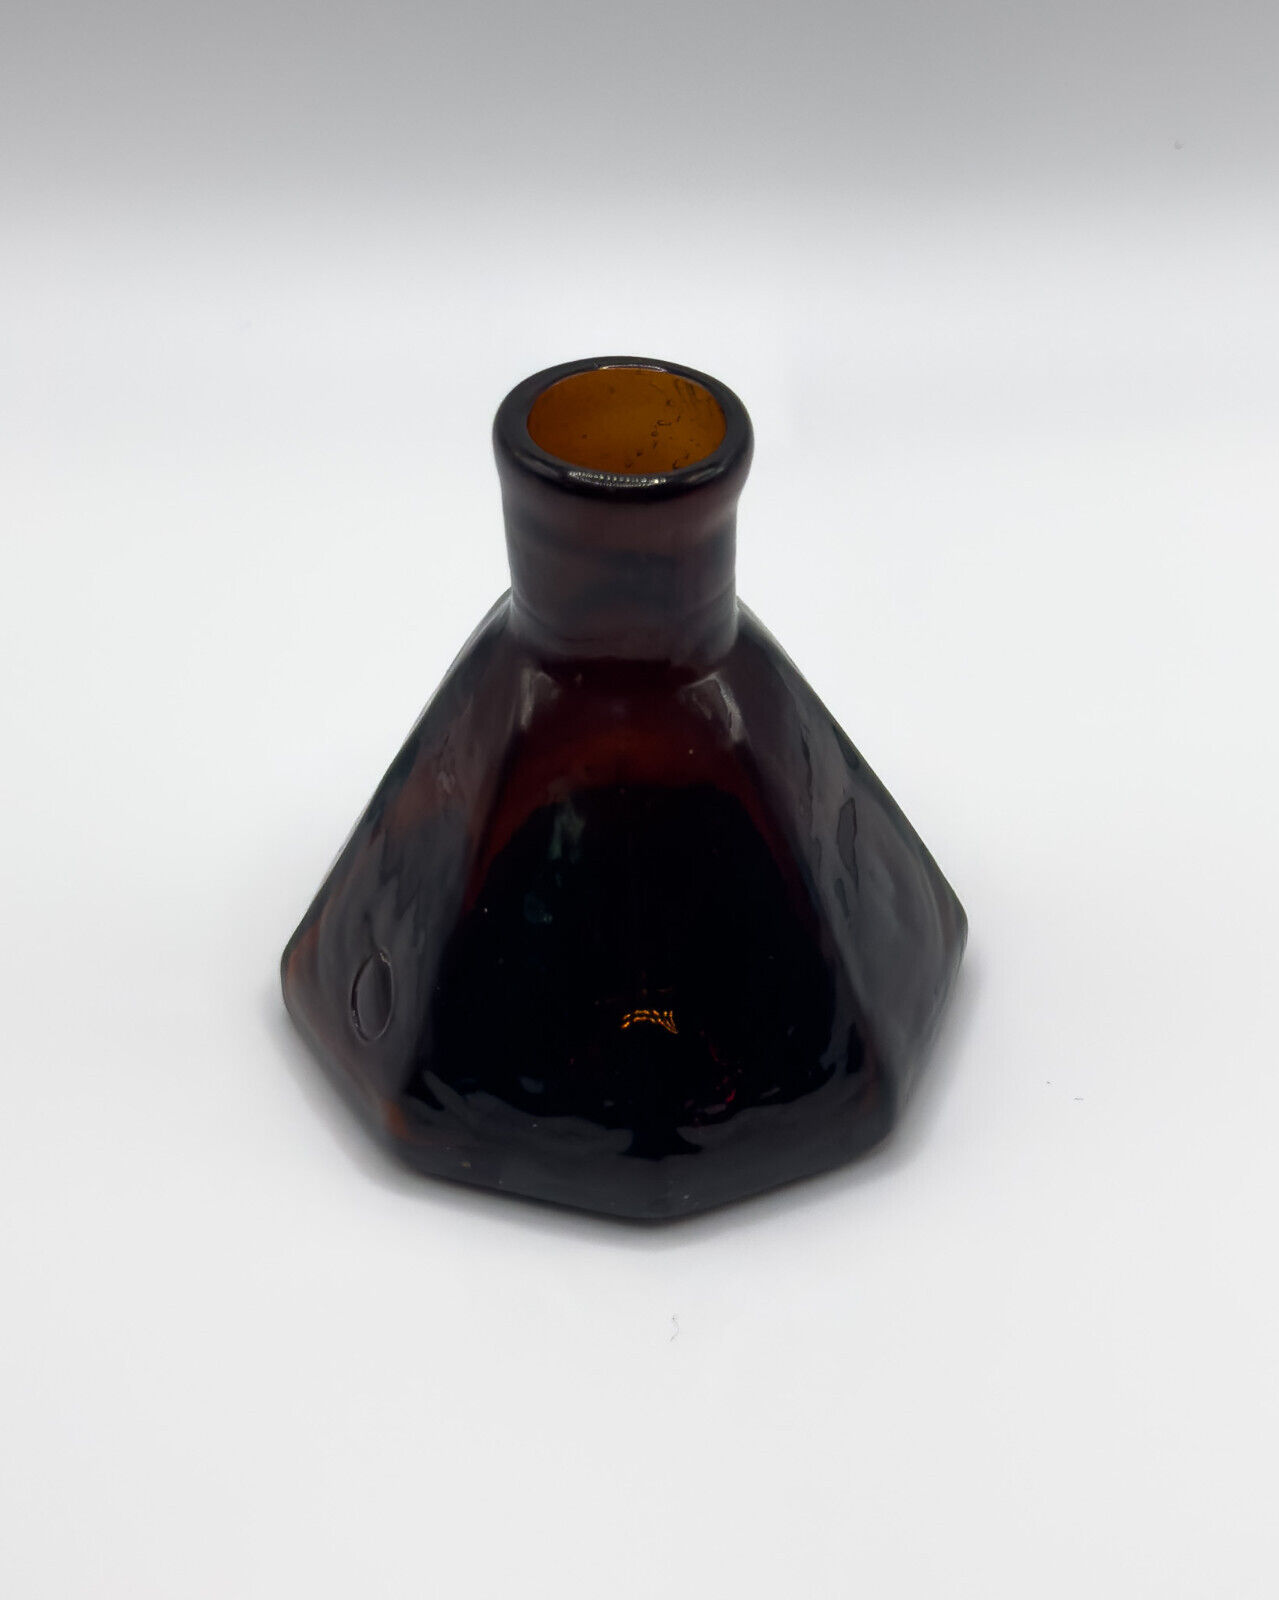 Antique Pontil Stoddard Amber Ink Well c. 1840s - 1860s